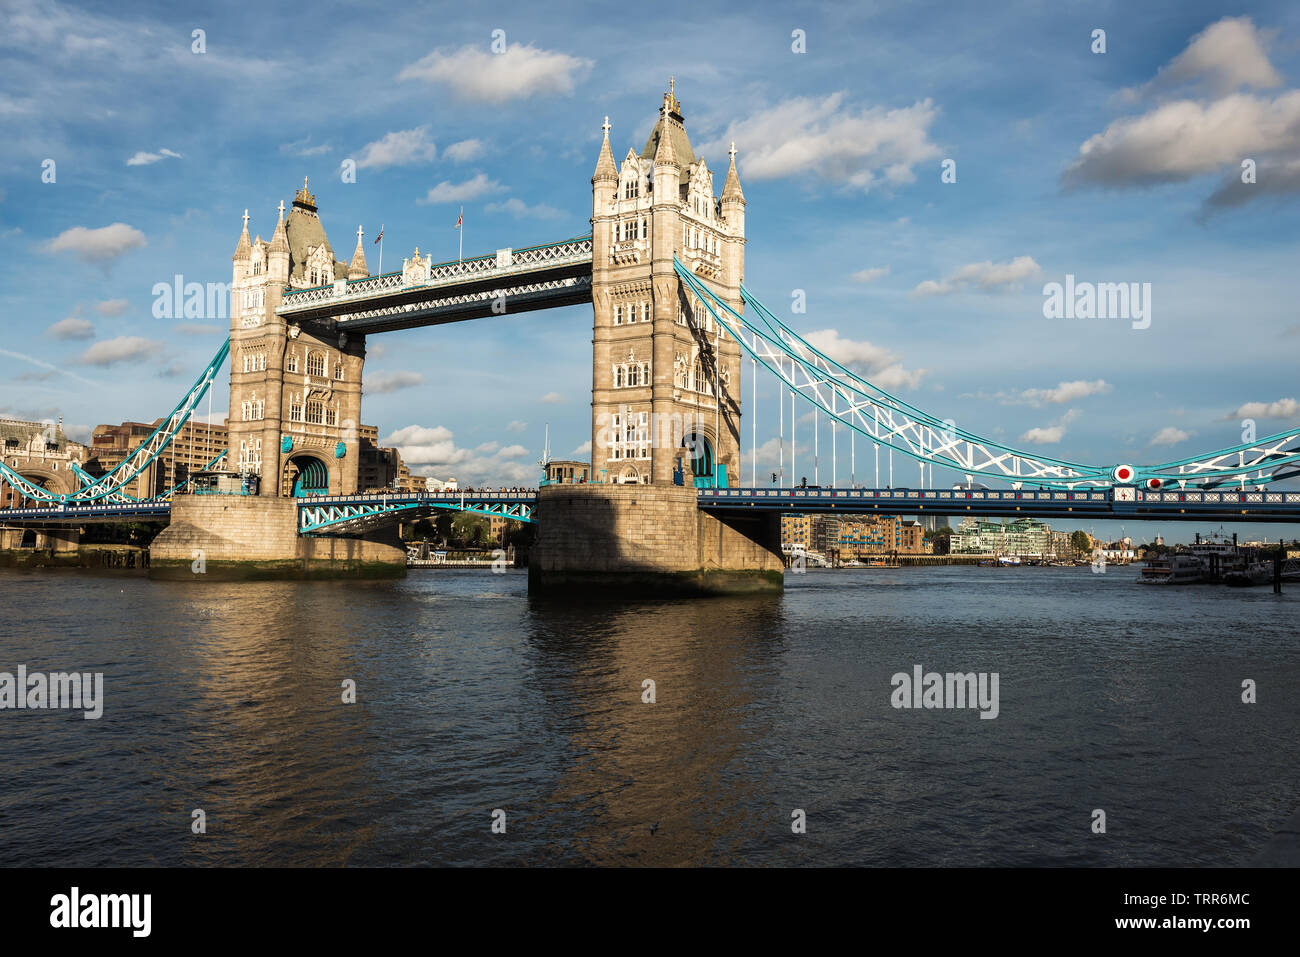 Puente de la torre en la dramática luz del atardecer, Londres, Reino Unido a partir de 2013 Foto de stock